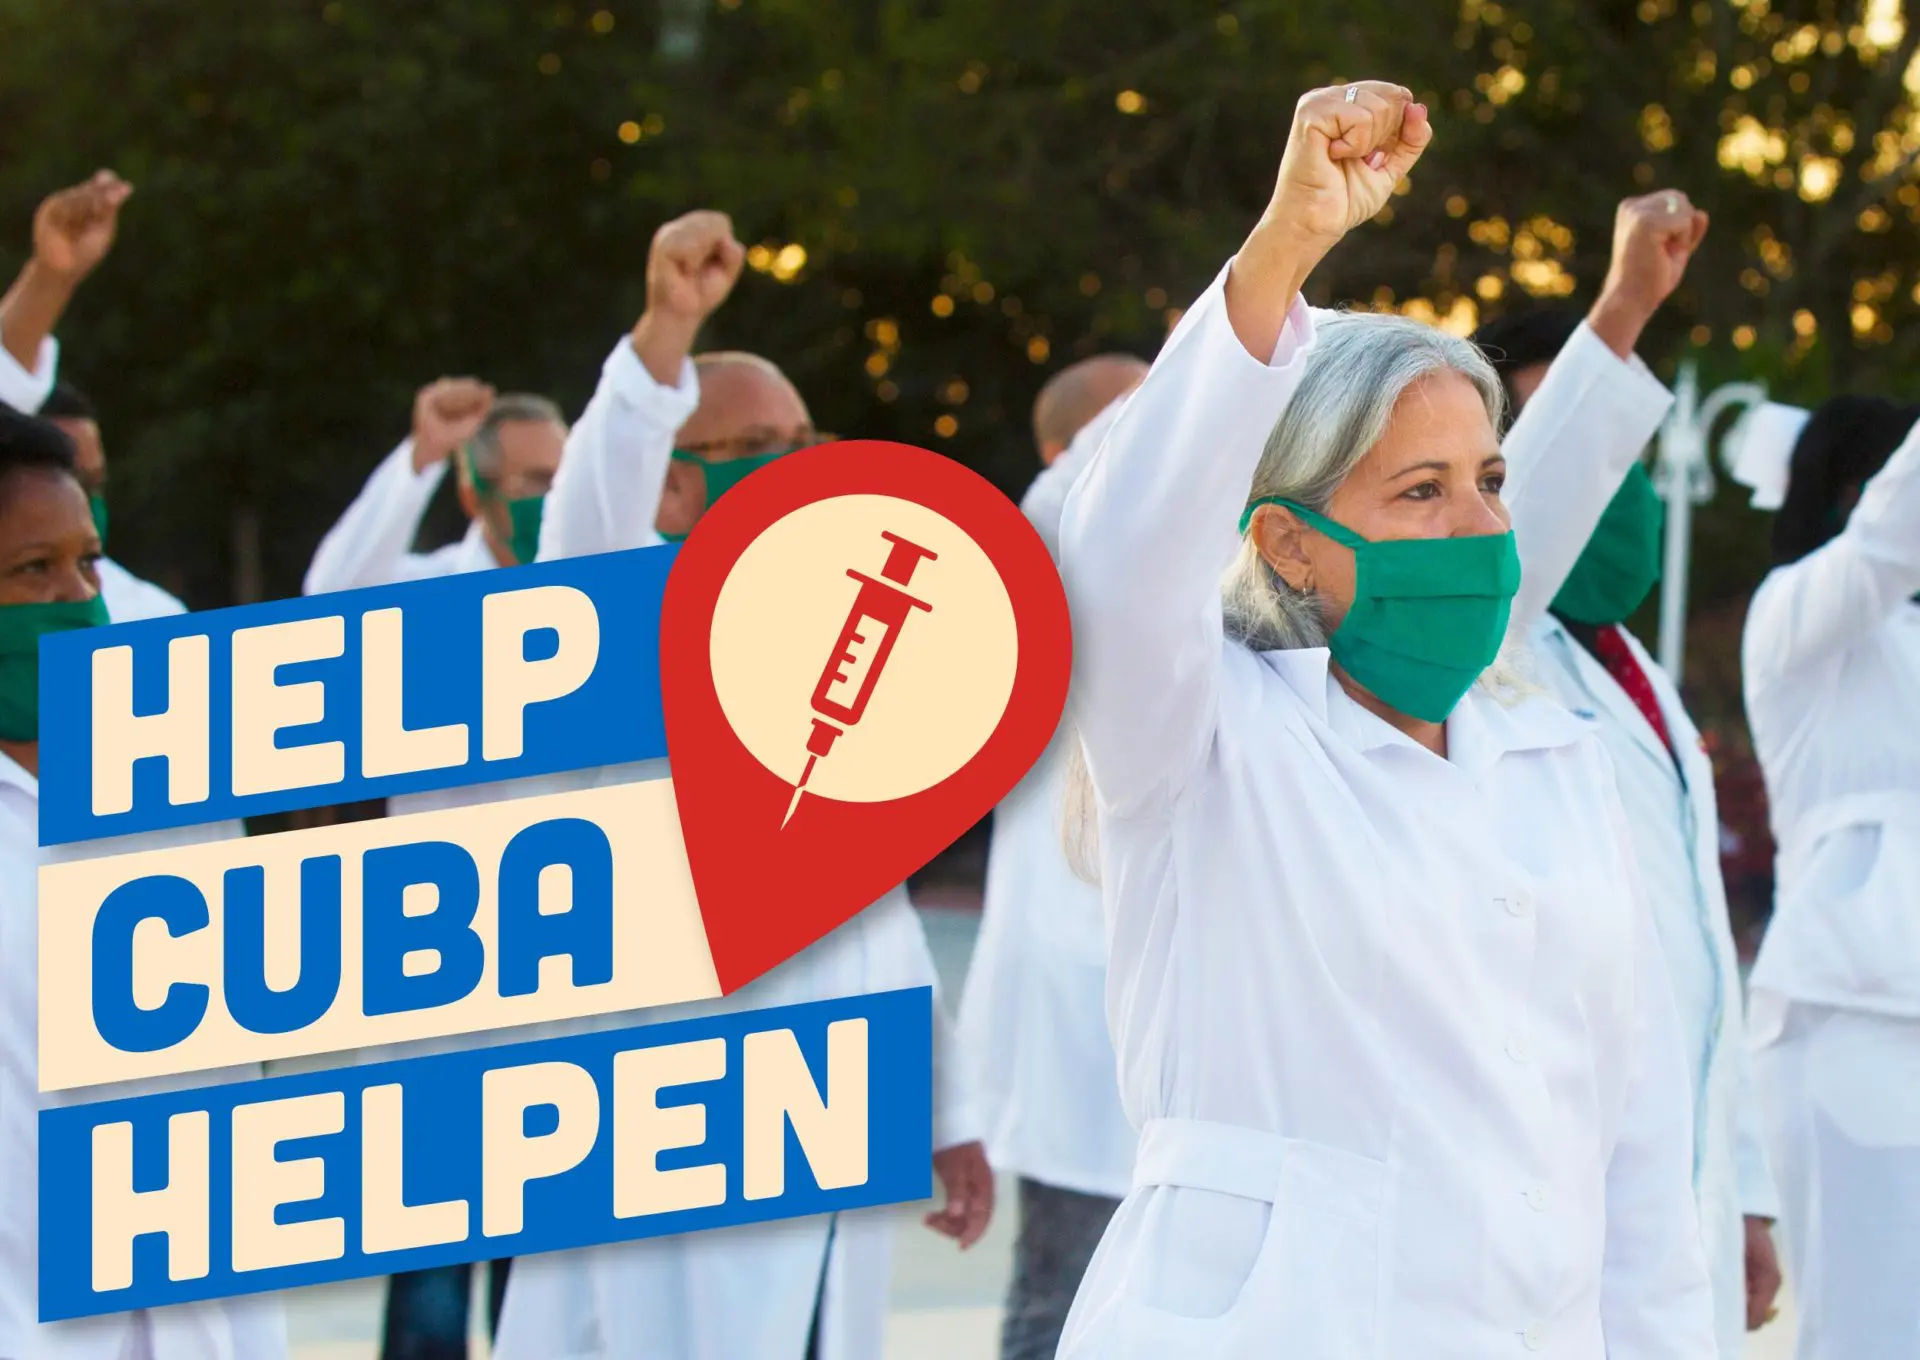 Help Cuba helpen